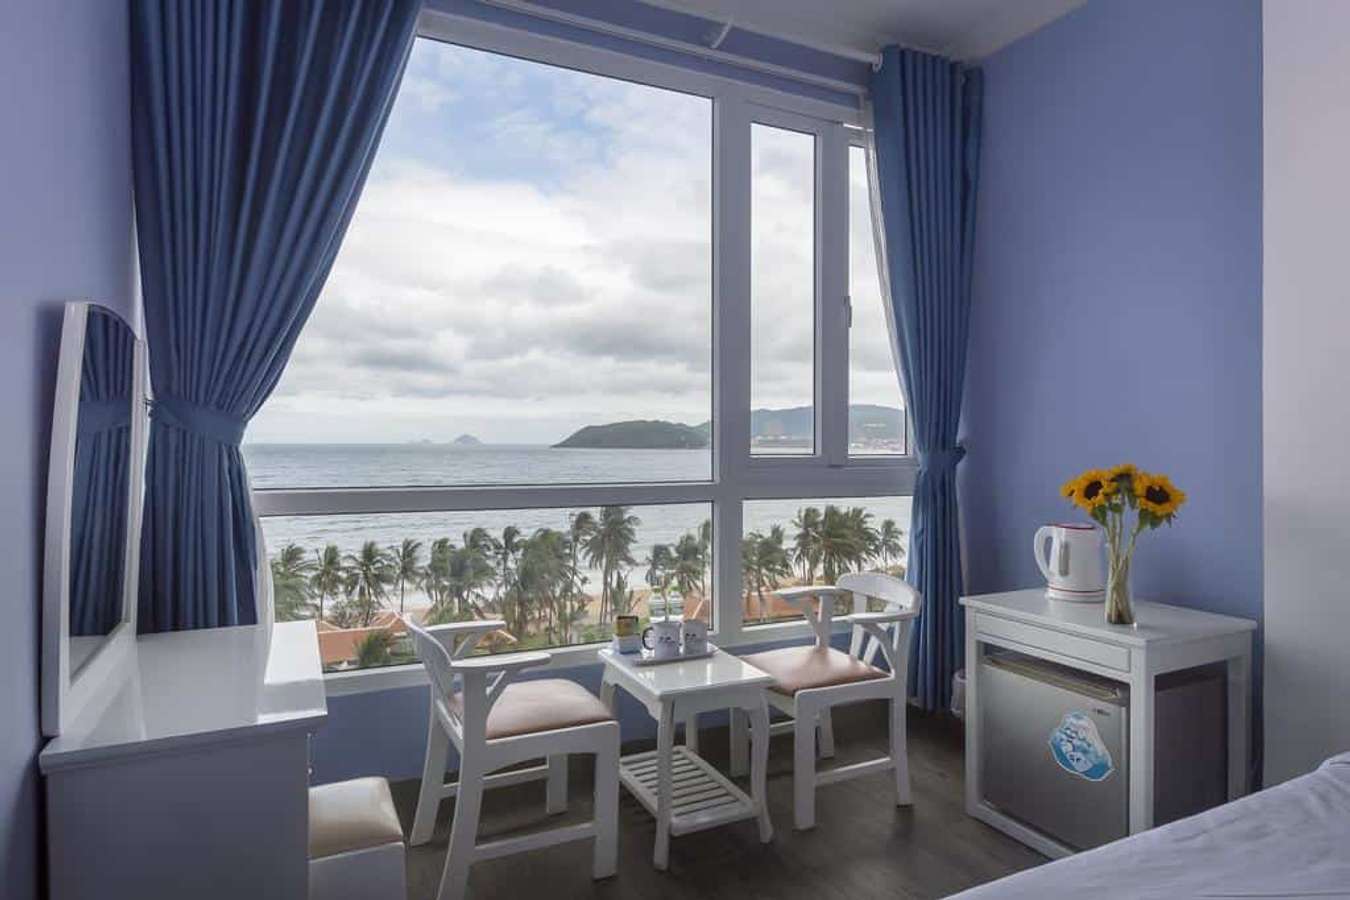 Team-lười-đi-bộ nhất định sẽ thích mê những khách sạn Nha Trang gần biển này